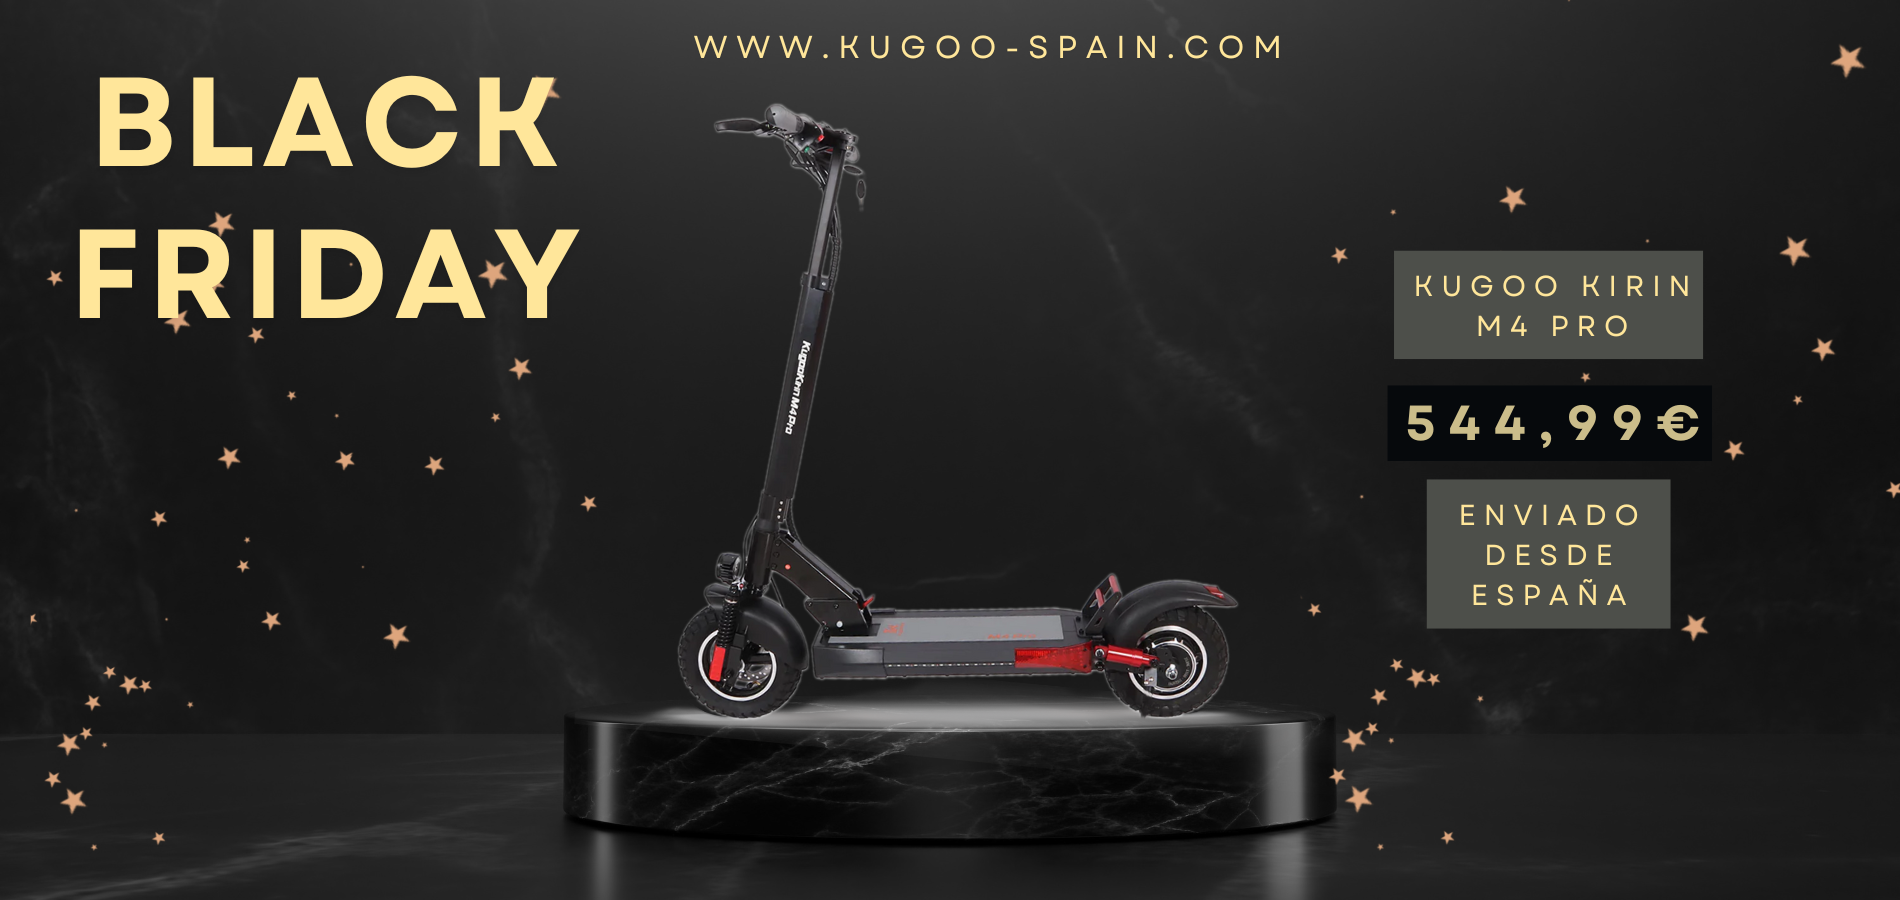 Llévate el patinete más vendido, el Kugoo Kirin M4 Pro, al precio más barato del año en Kugoo Spain